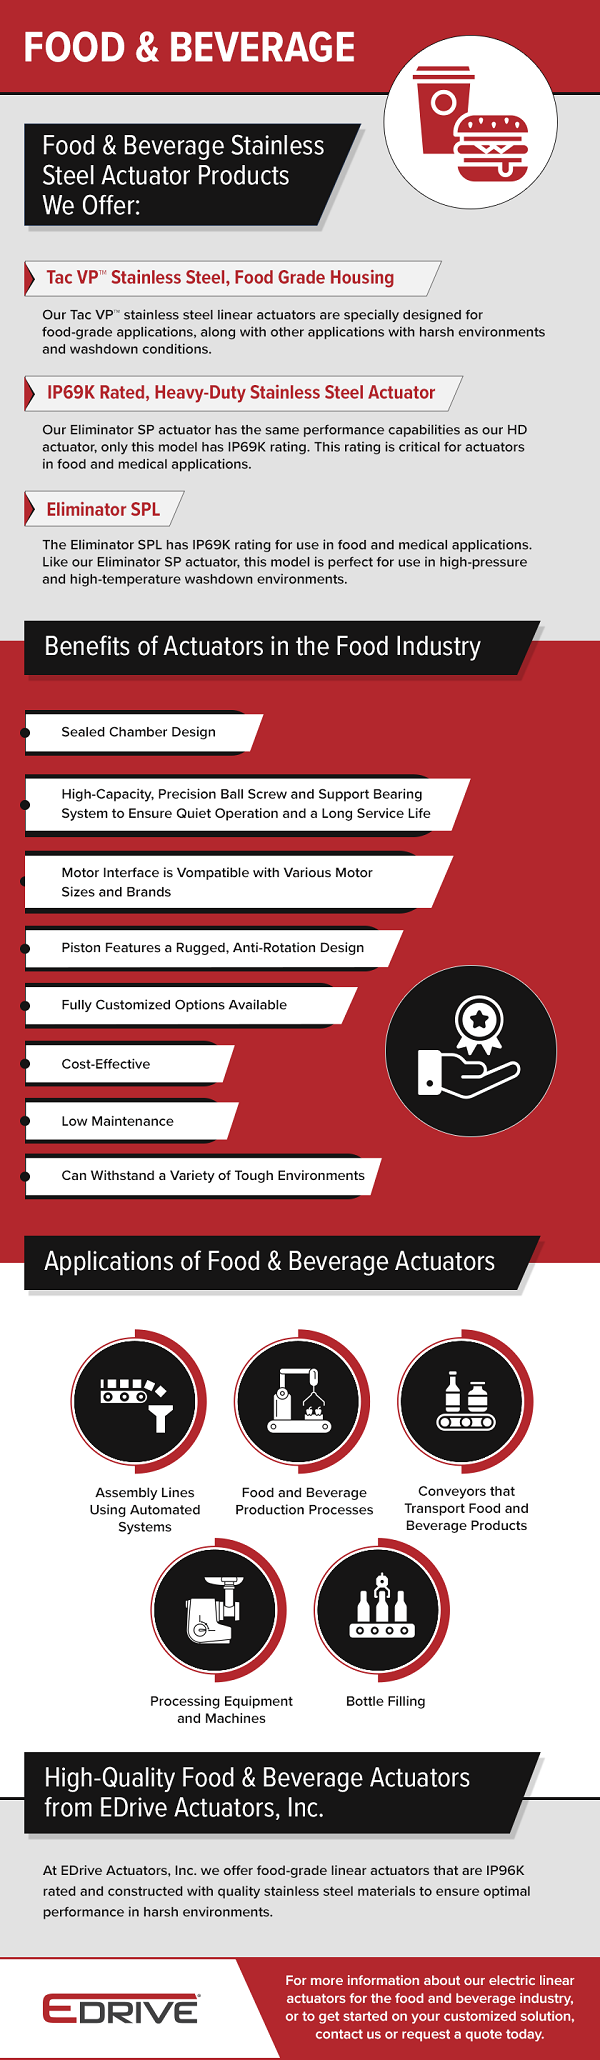 Food & Beverage Actuators